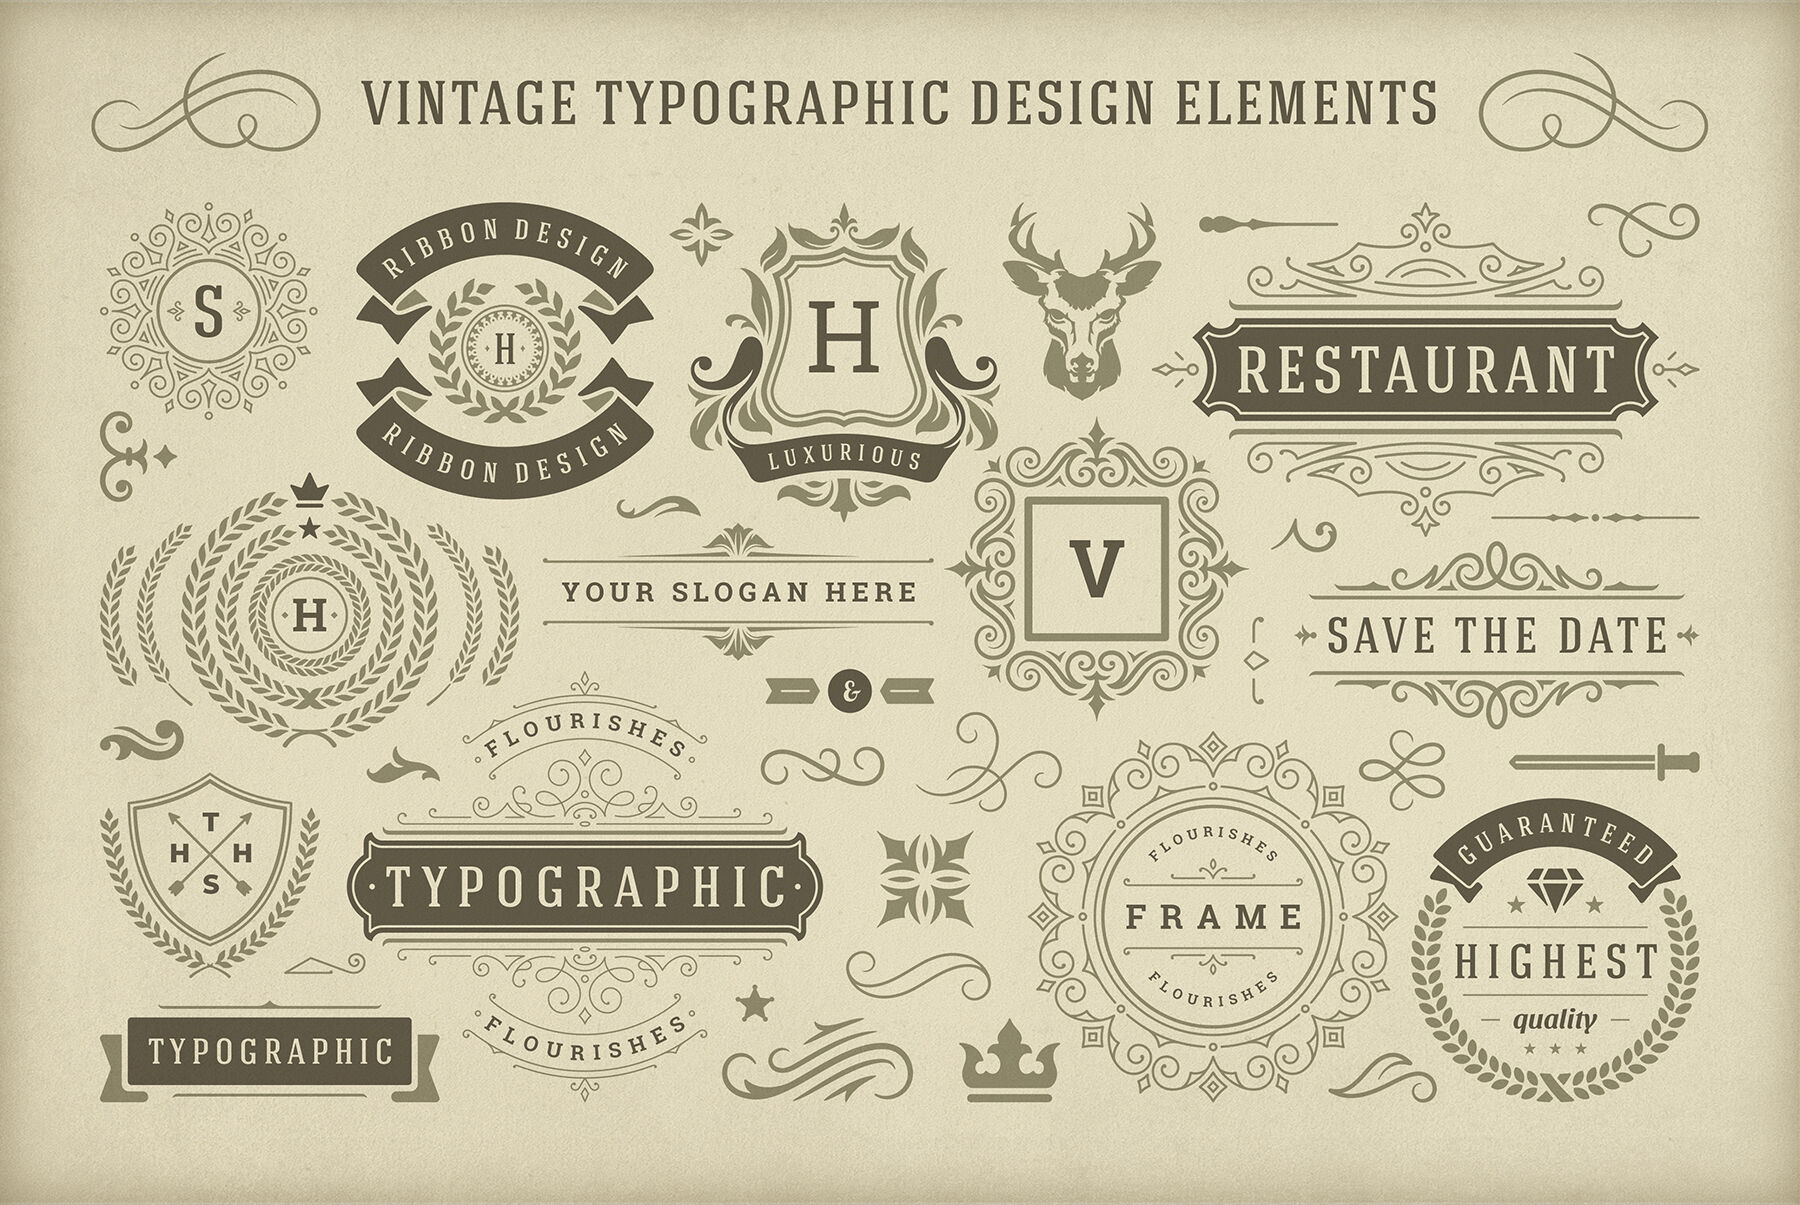 Vintage Typographic Design Elements By Vasya Kobelev | TheHungryJPEG